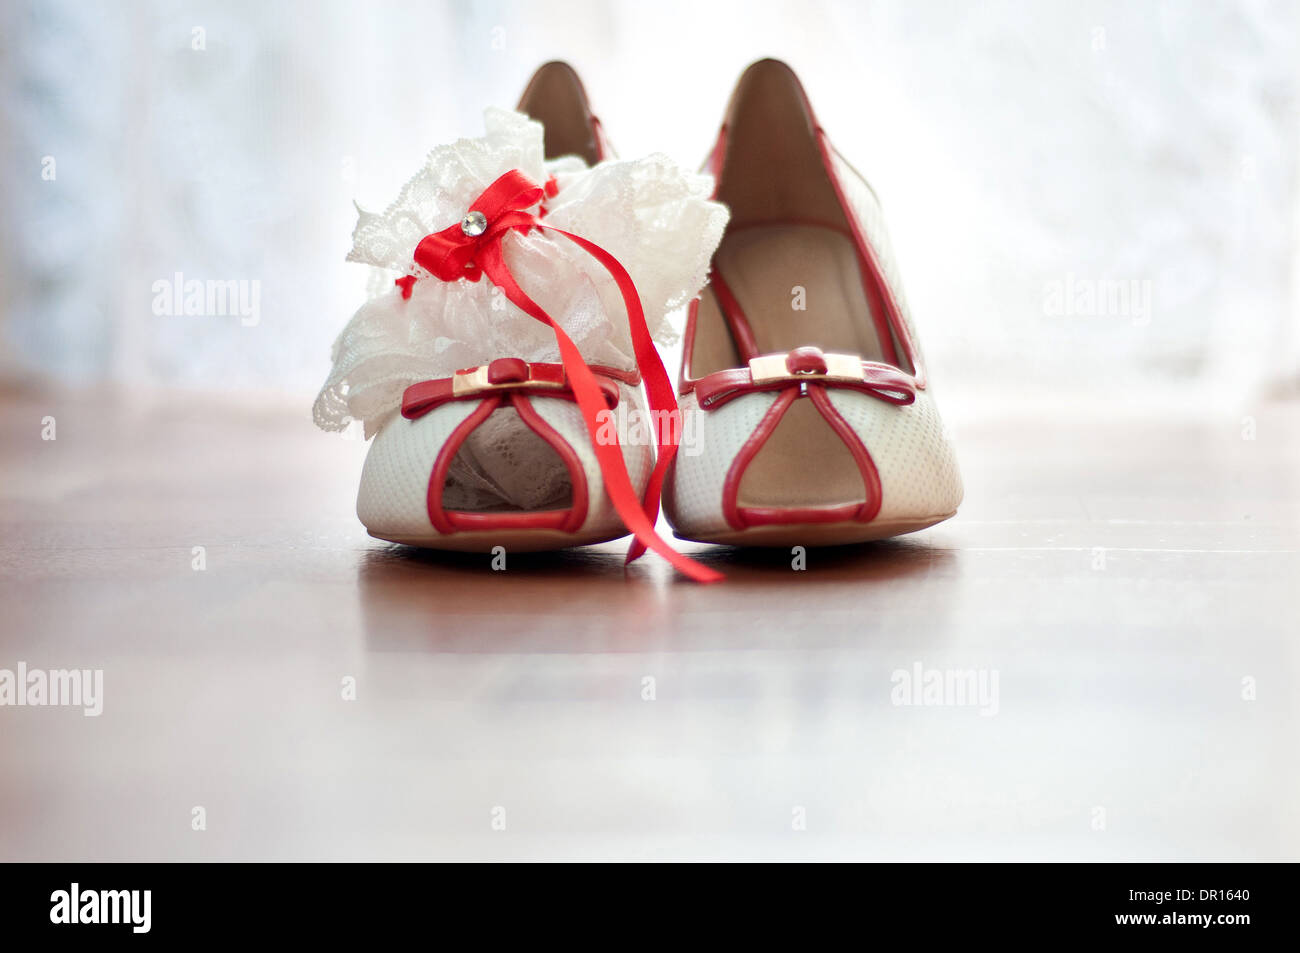 Chaussures rouges et porte-jarretelles de la mariée Banque D'Images